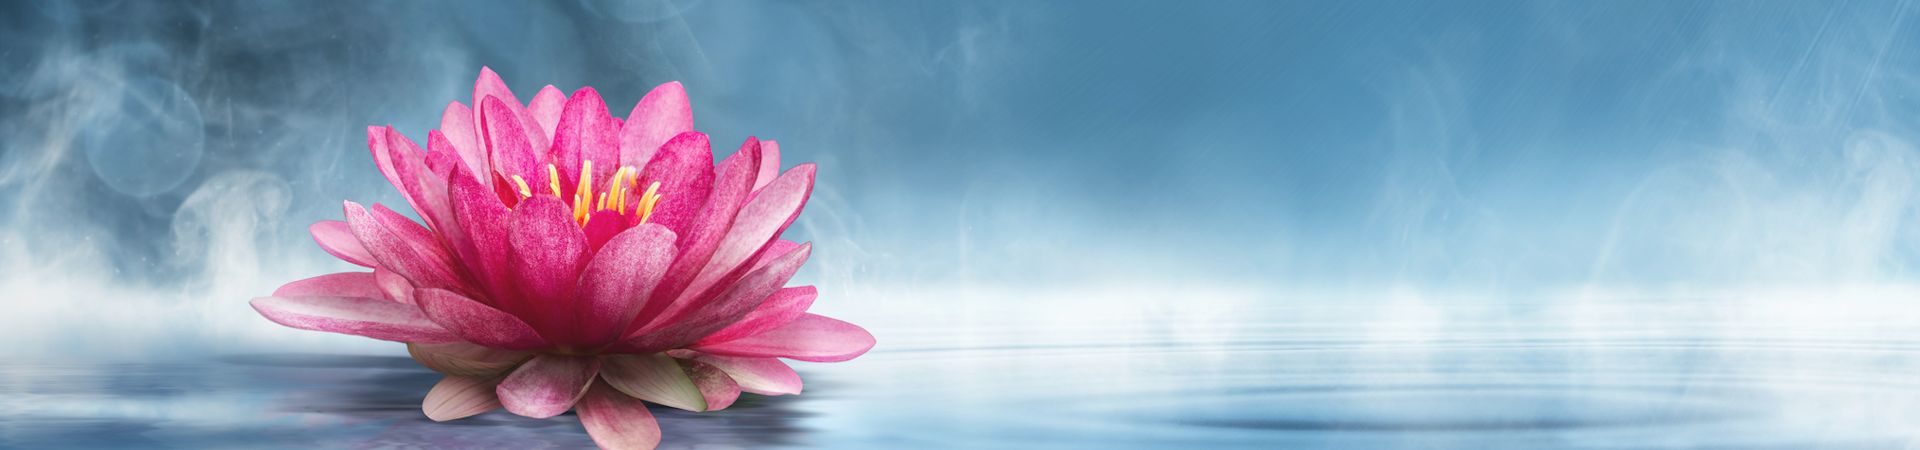 trillium yoga meditation lotus fade 93 2